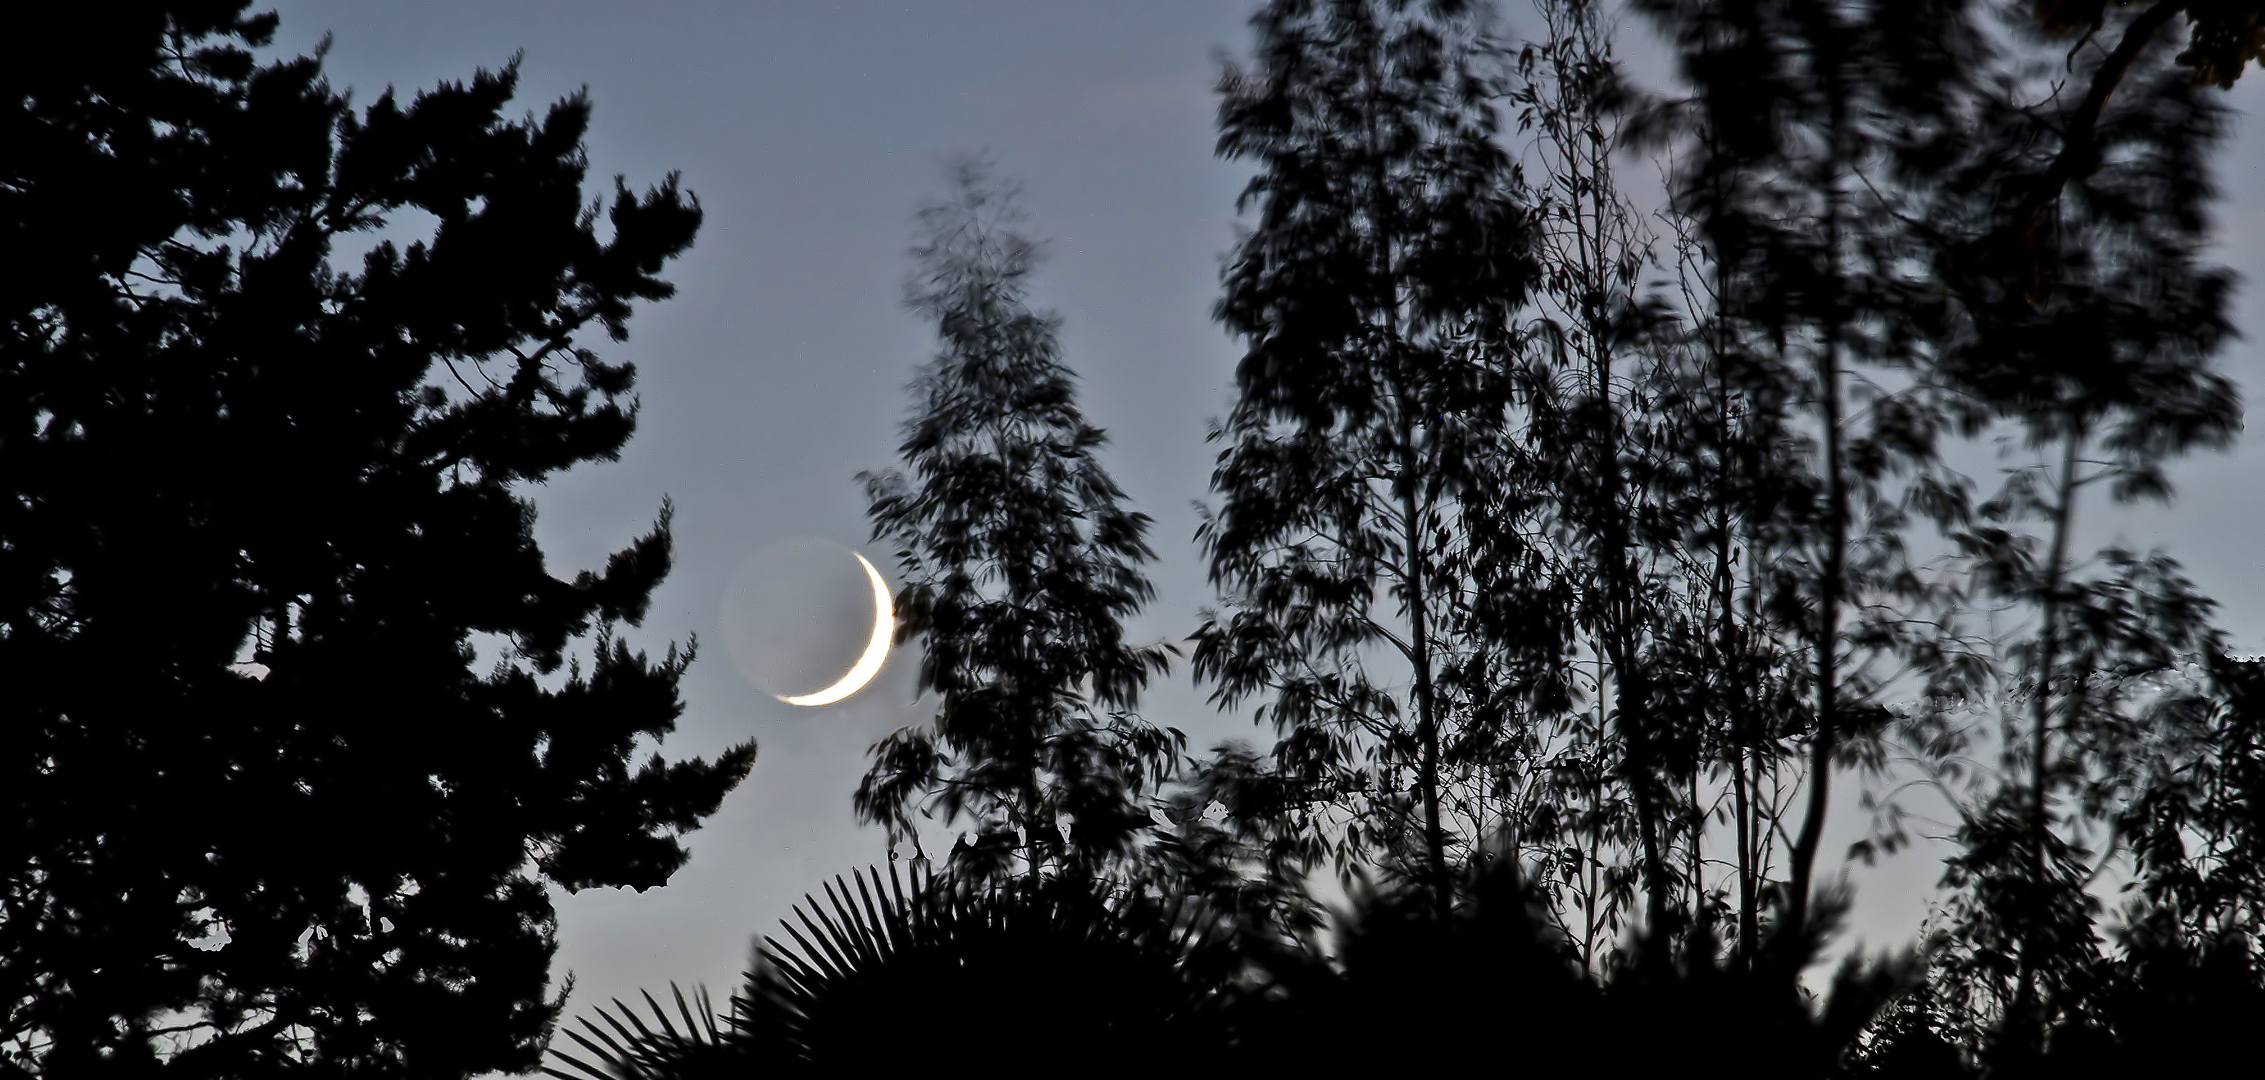 Lever de lune vu de ma terrasse  --  Mondaufgang von meiner Terrasse aus gesehen